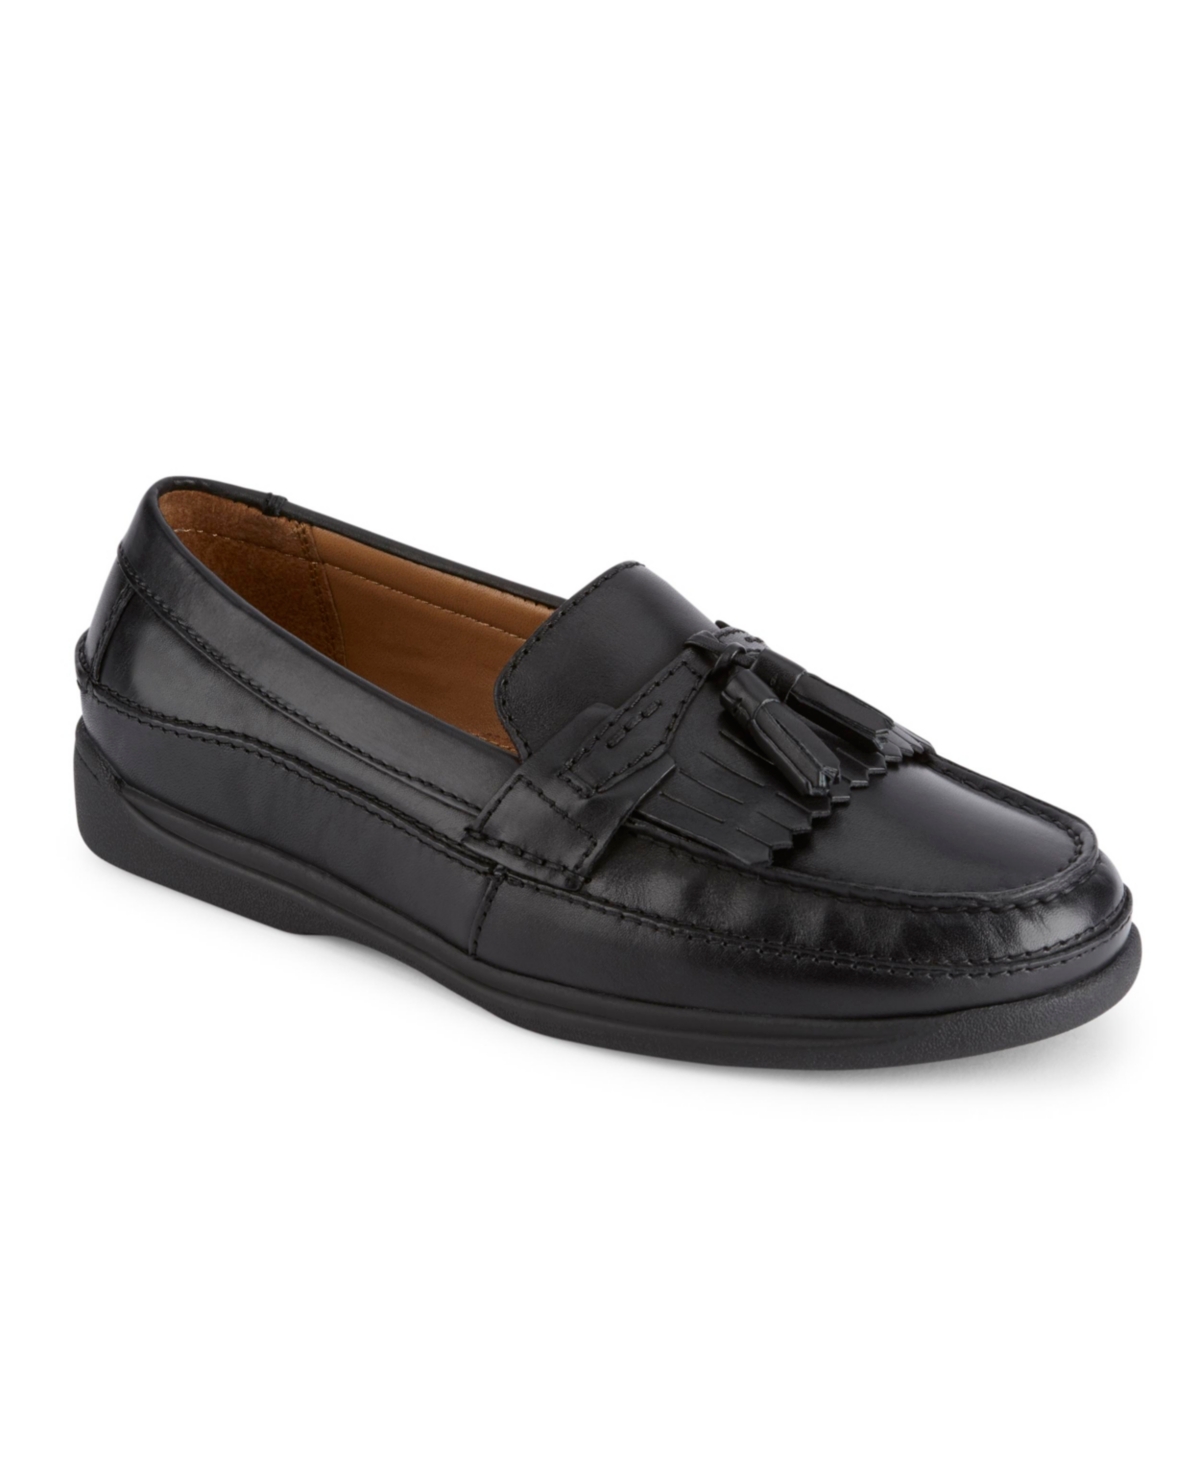 Men's Sinclair Loafers - Black